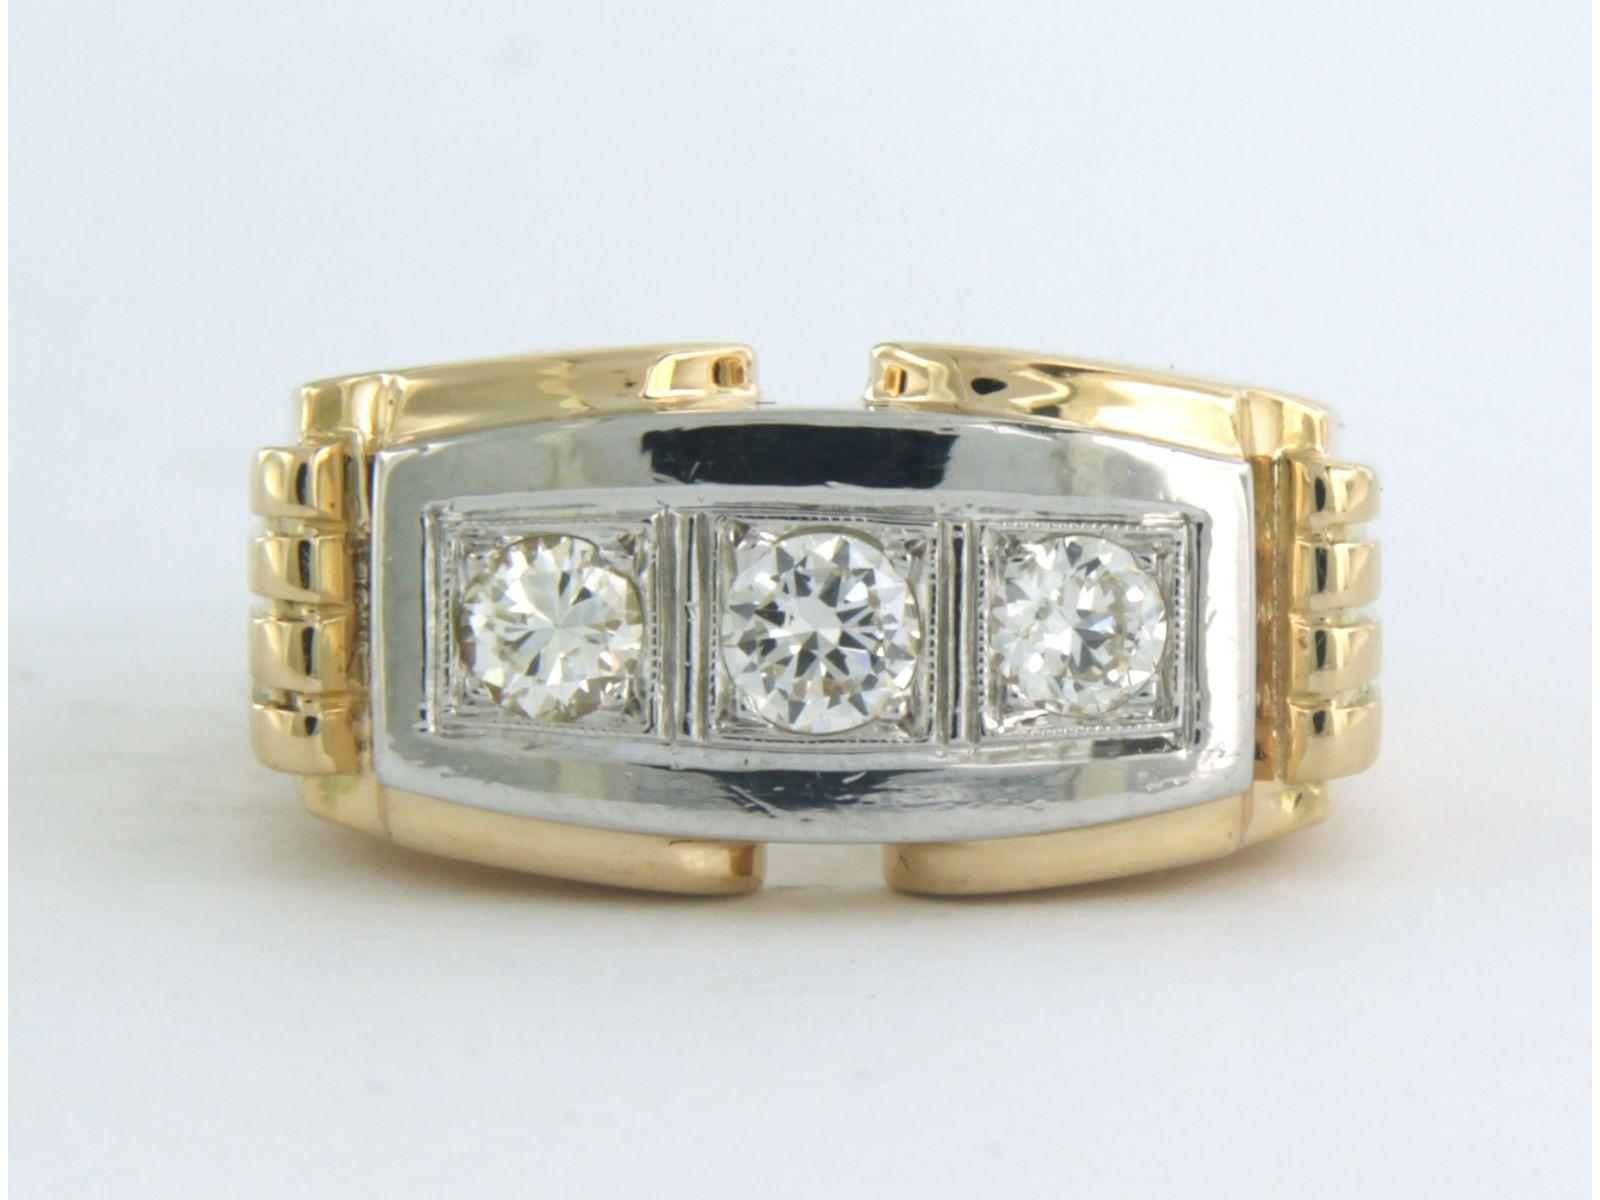 Bicolor-Ring aus 18 Karat, besetzt mit Diamanten im alten europäischen Schliff bis zu 0,50ct - G/H - VS/SI - Ringgröße U.S. 9.25 - EU. 19.25(60)

ausführliche Beschreibung

die Oberseite des Rings ist 1.1 cm breit

Gewicht 16,6 Gramm

Ringgröße US